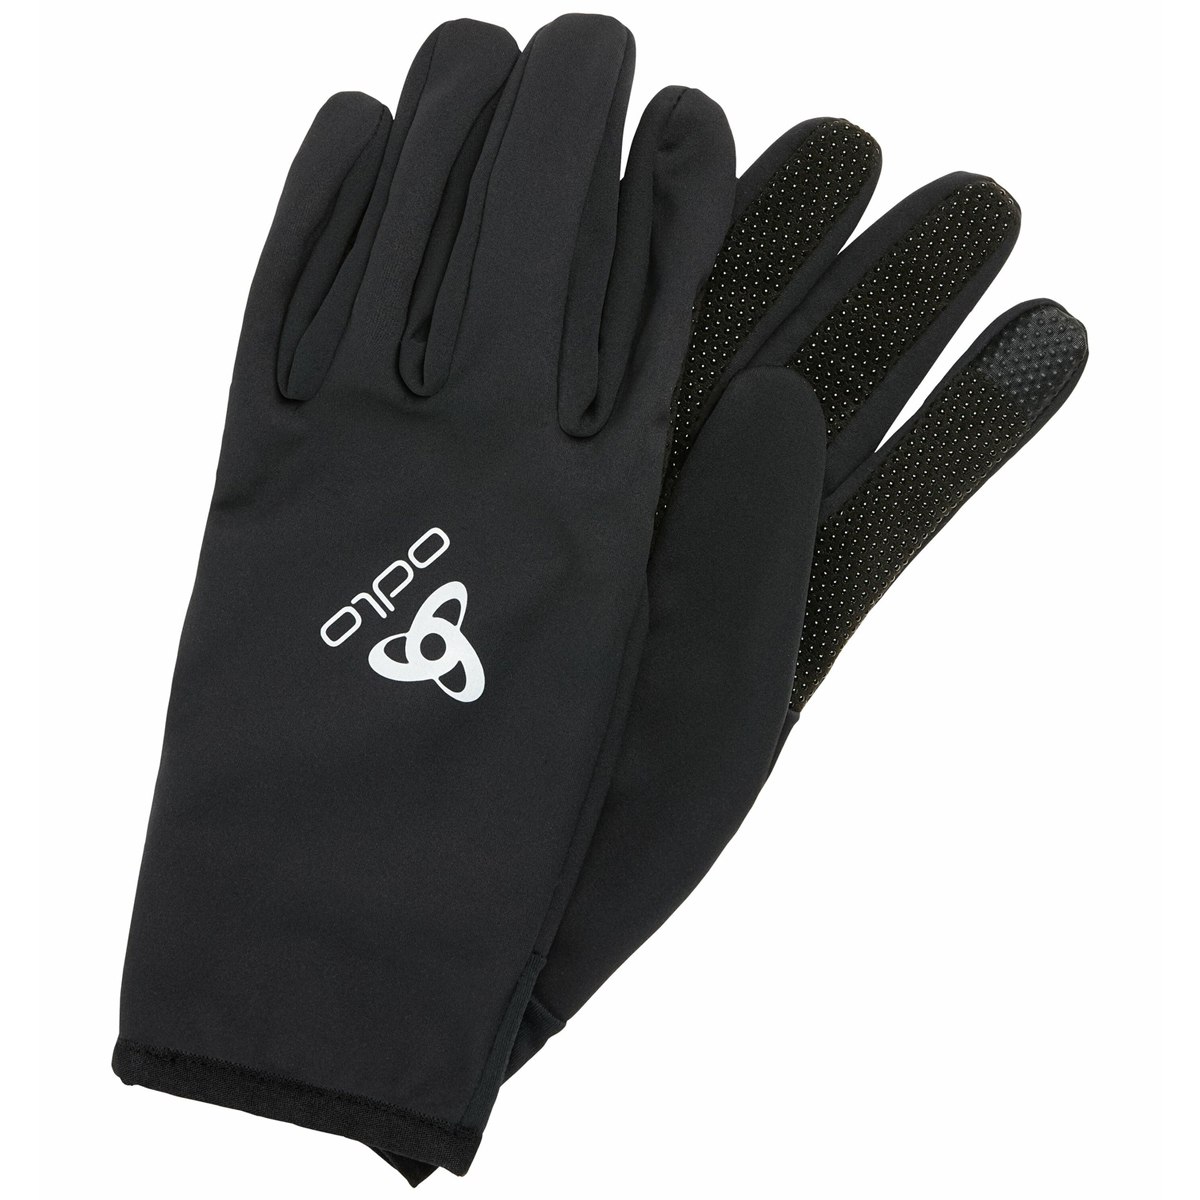 Produktbild von Odlo Ceramiwarm Grip Handschuhe - schwarz